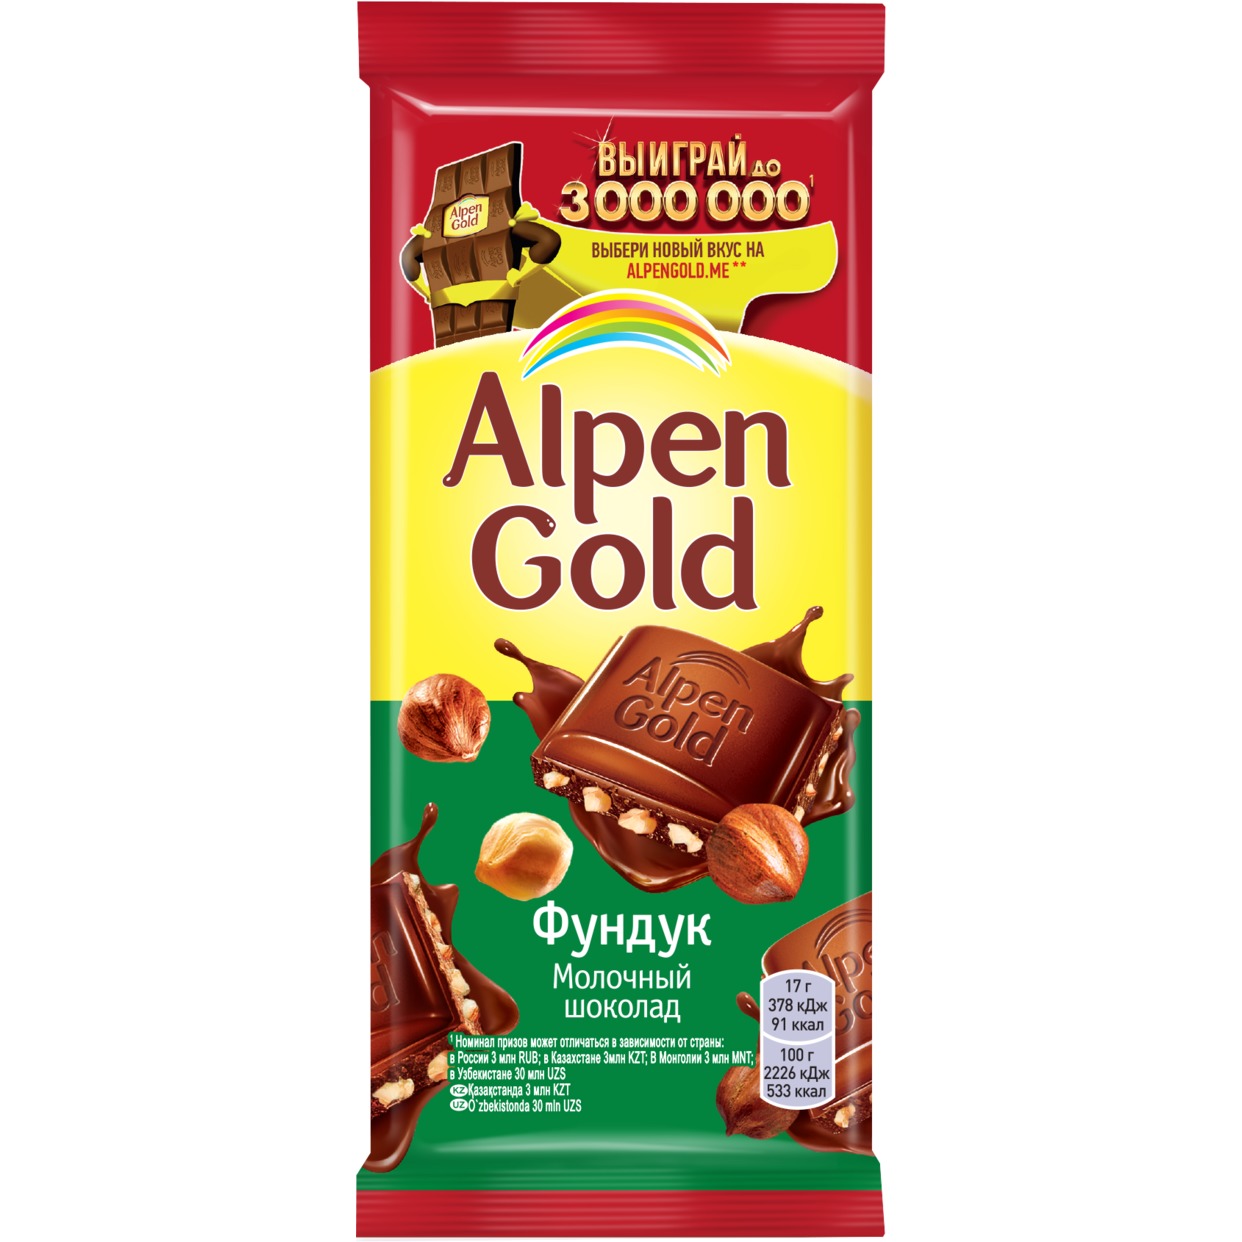 Шоколад Alpen Gold, молочный с фундуком, 85 г по акции в Пятерочке